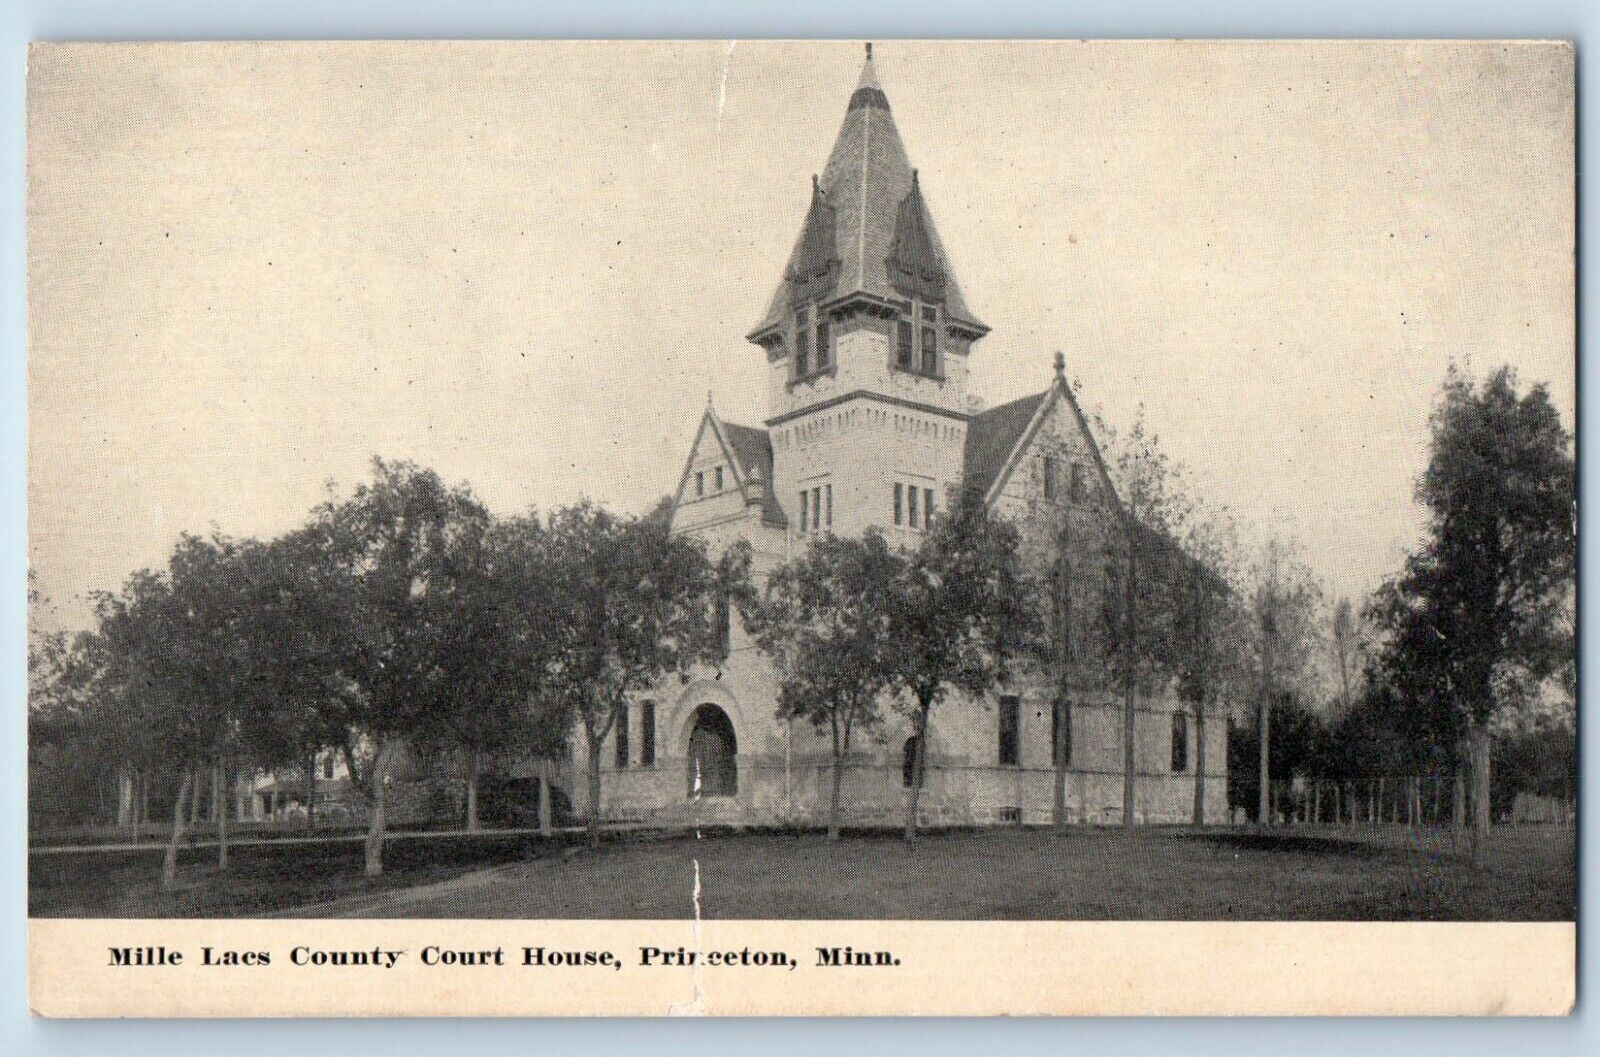 Princeton Minnesota Postcard Mille Lacs County Court House Building 1910 Vintage